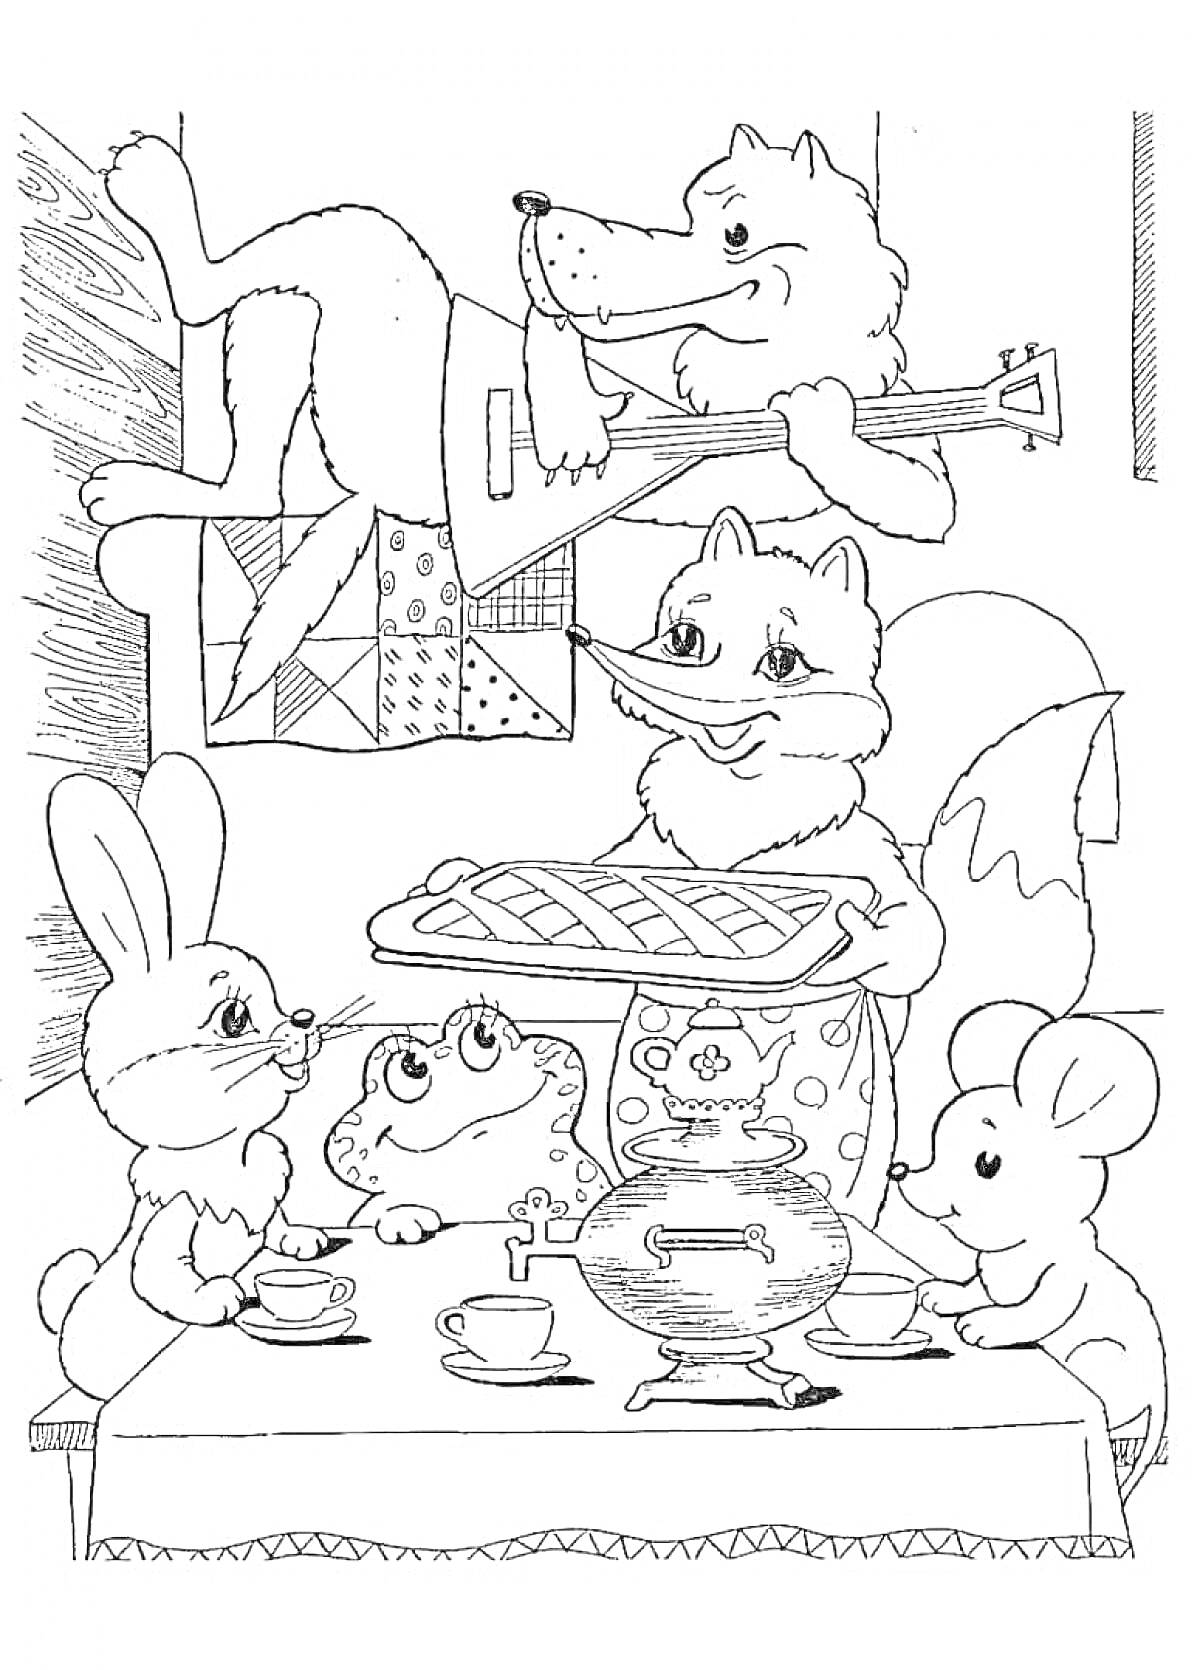 Раскраска Сцена из сказки «Теремок»: лесные животные за столом с самоваром, лиса с пирогом, волк с балалайкой